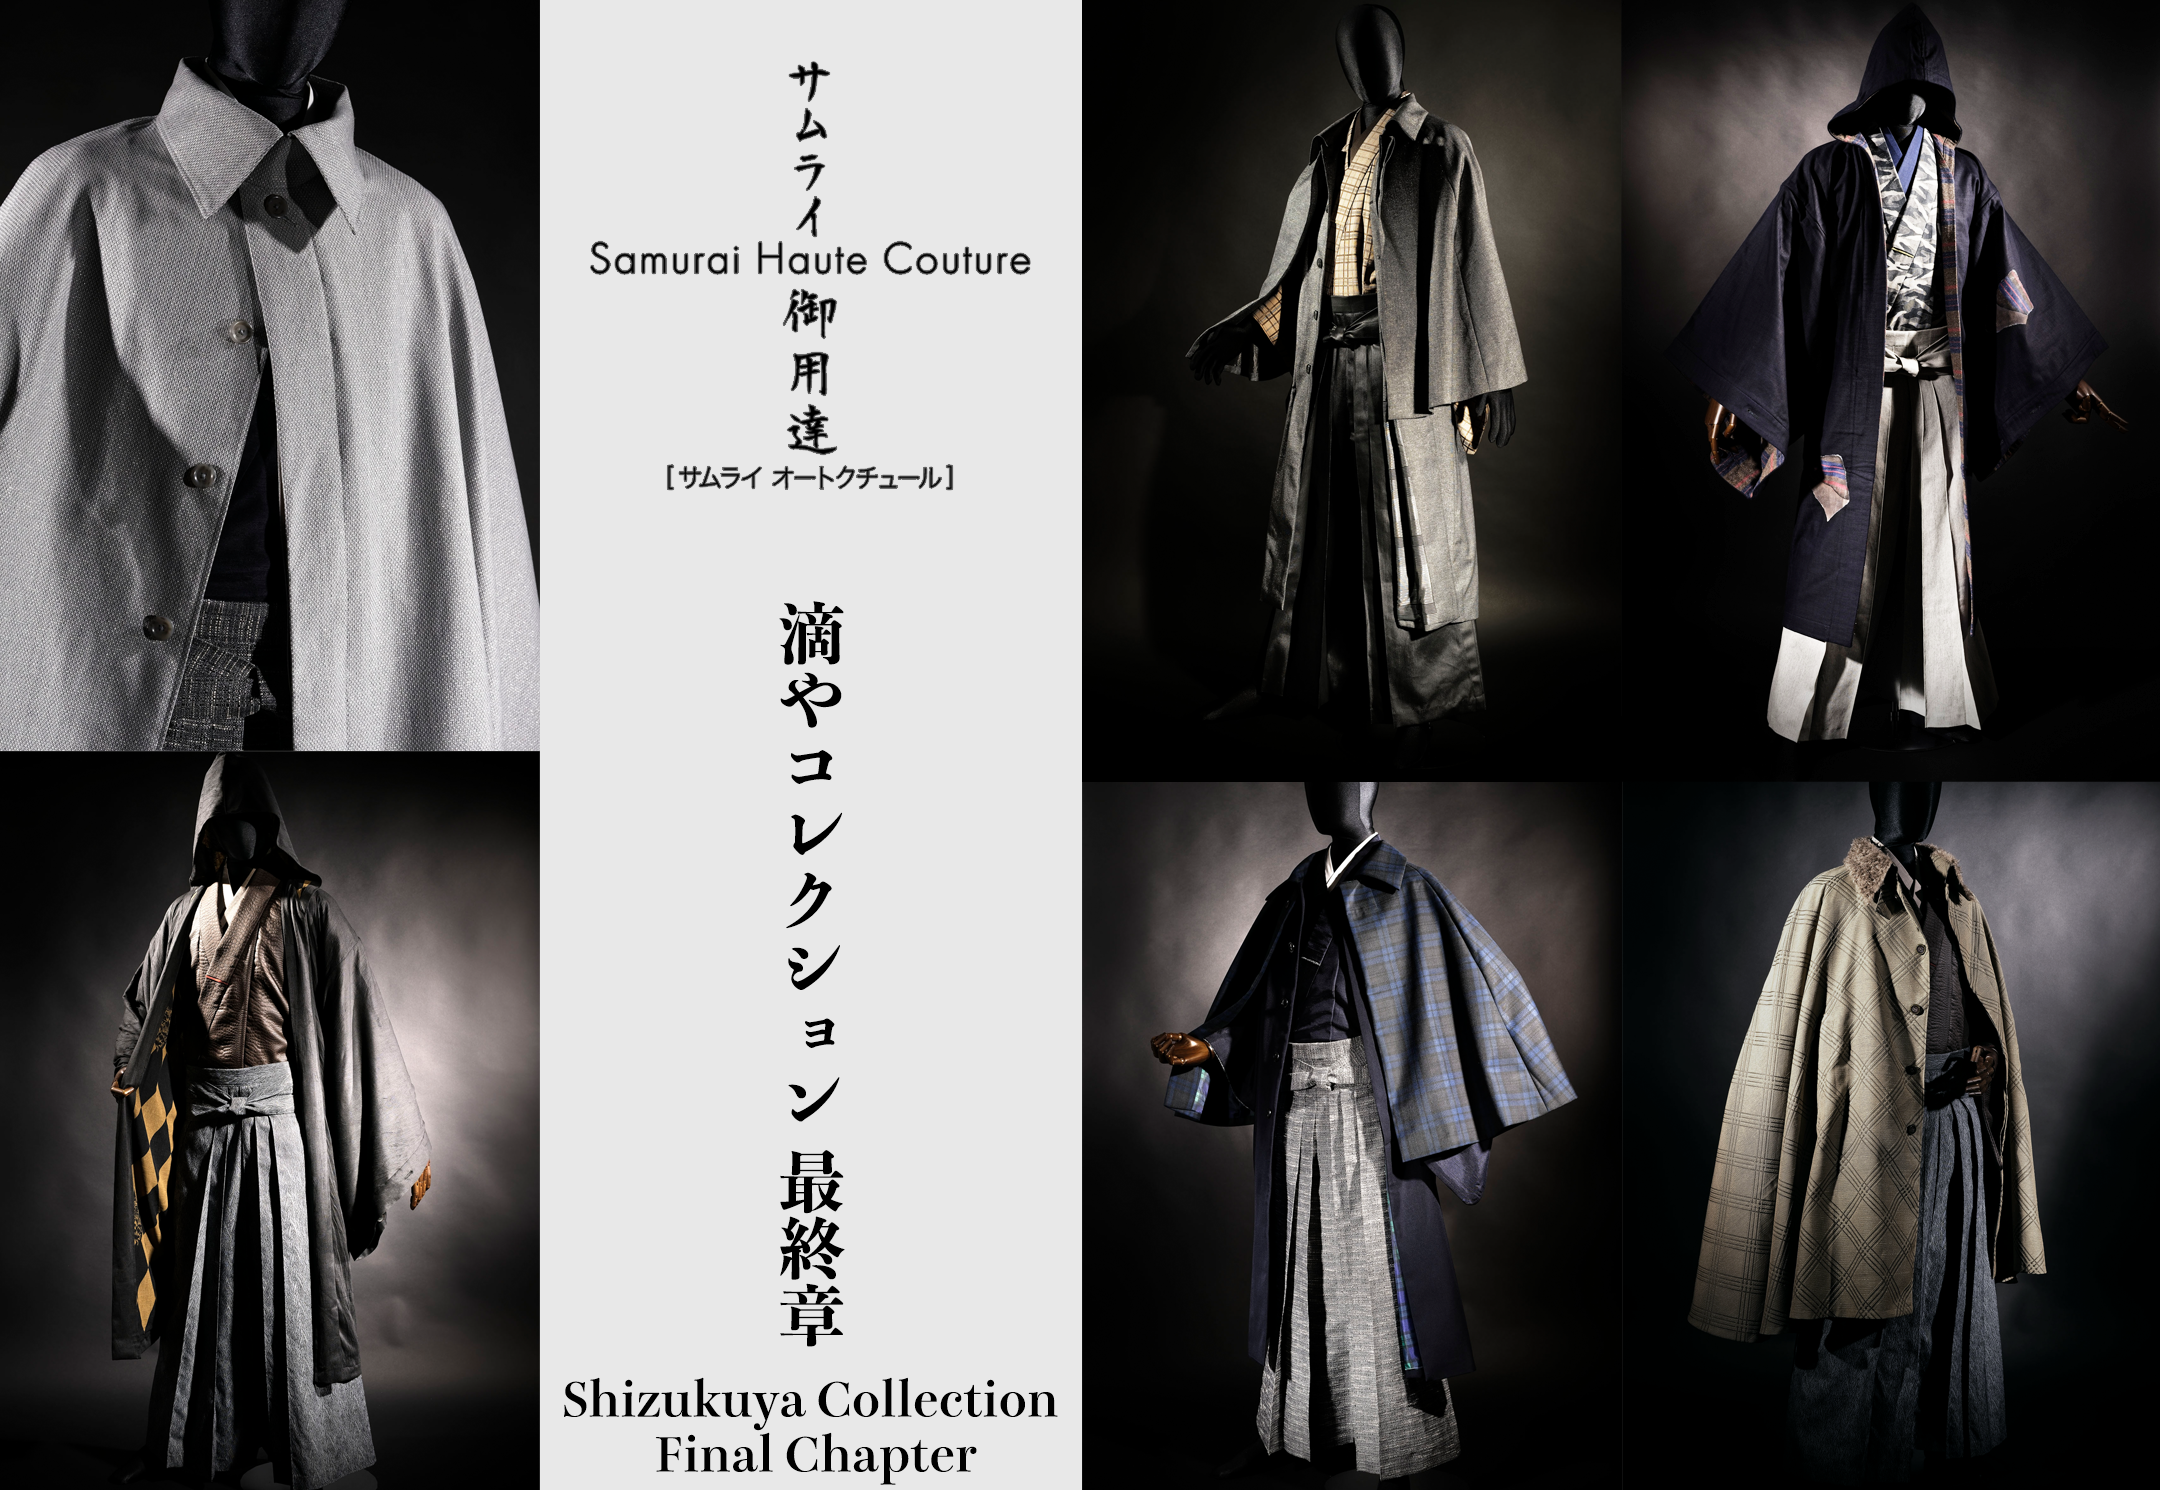 Samurai Haute Couture Exhibition